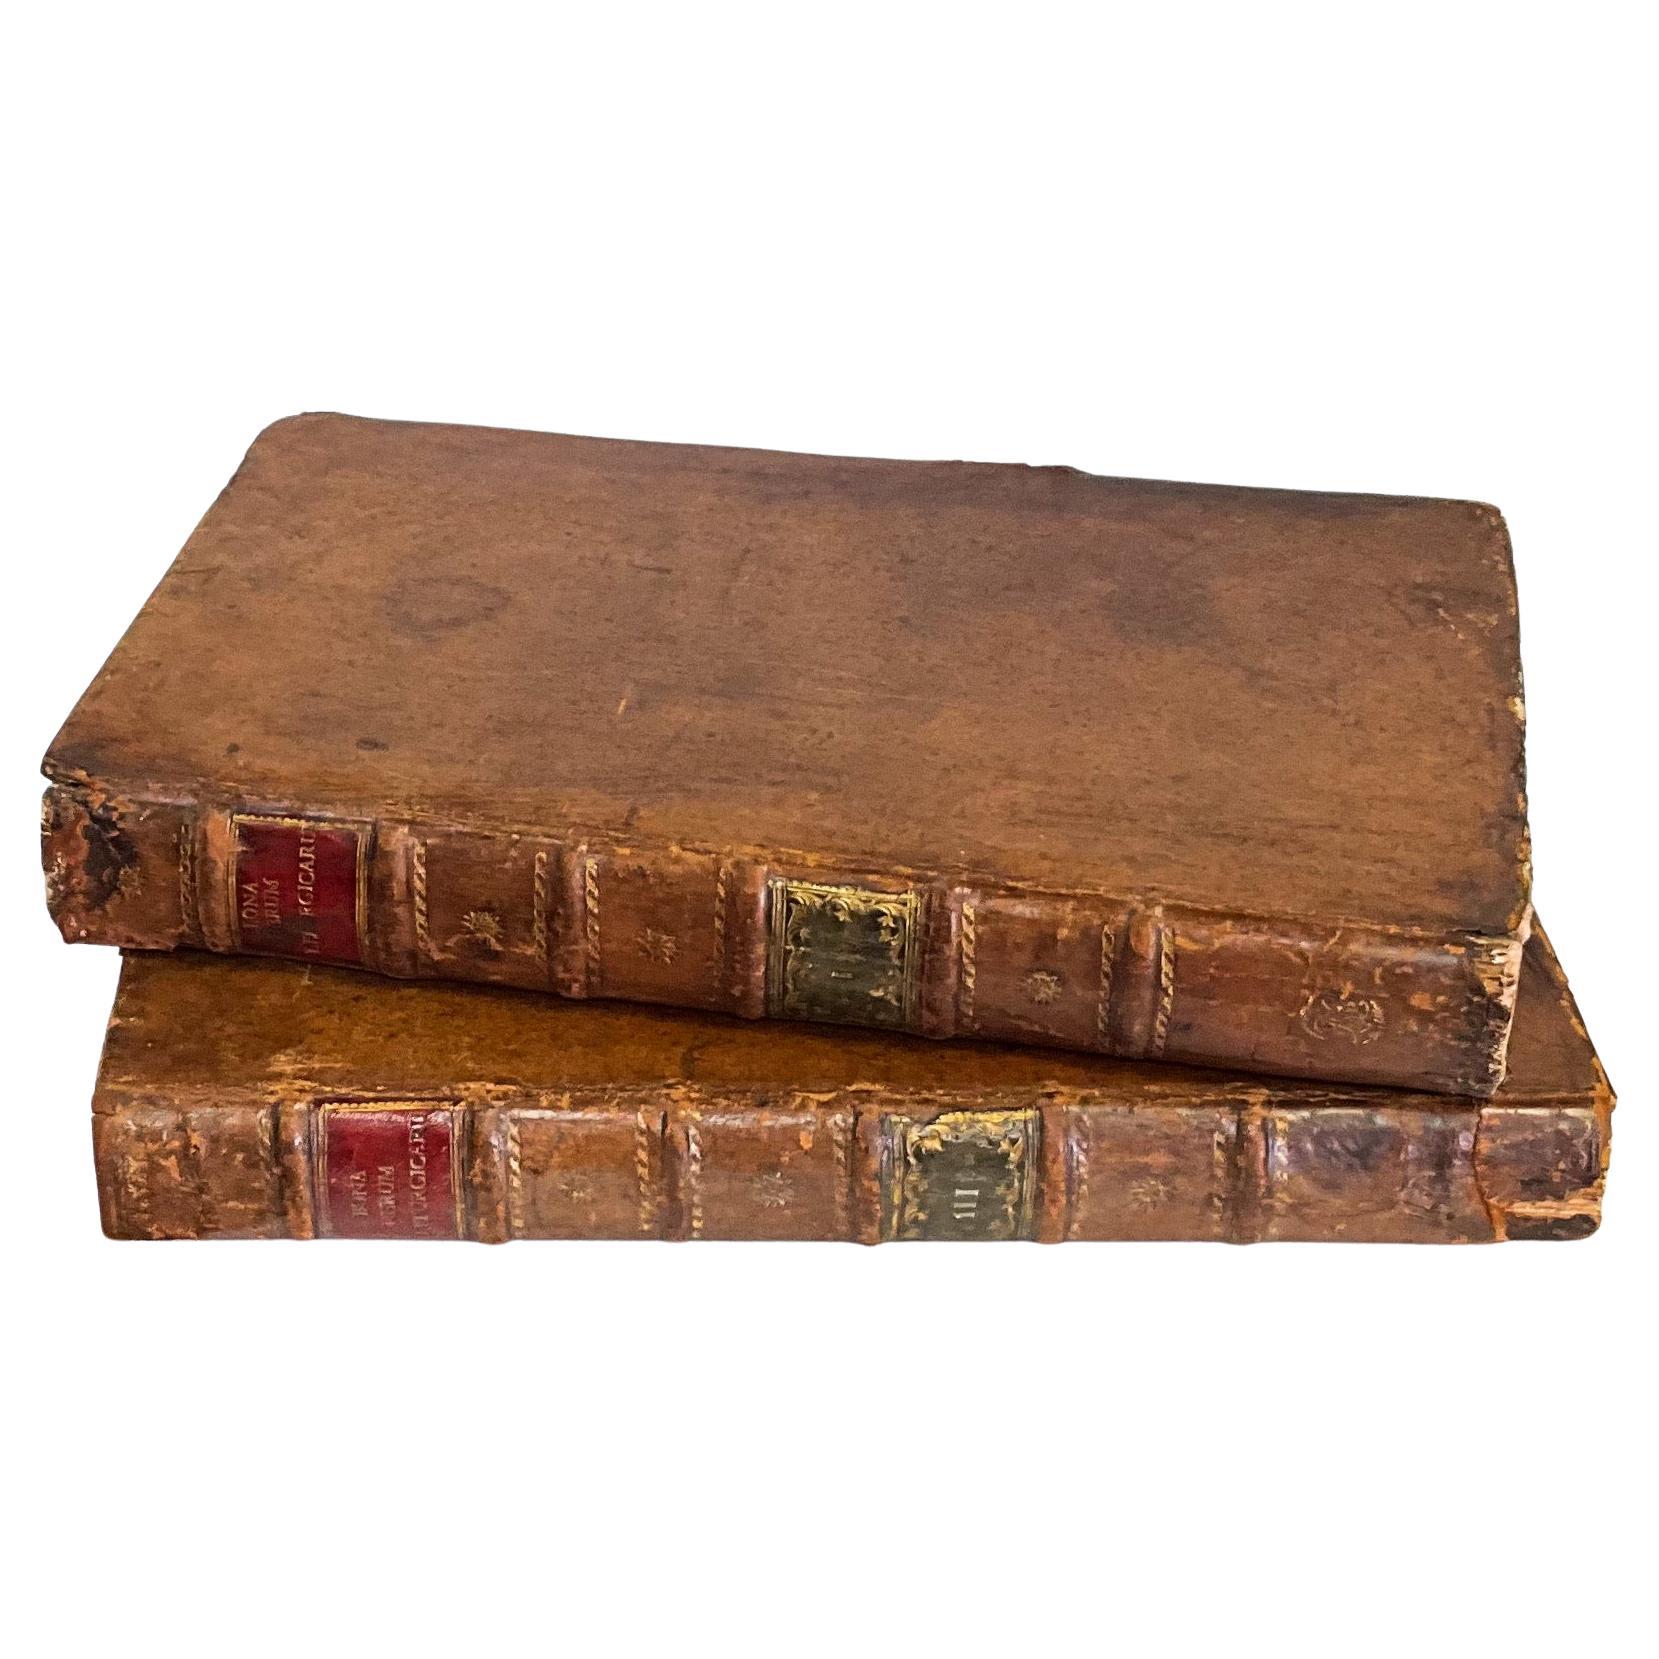 A.C.I.C. Grand livre religieux géorgien en cuir et faux marbre - S/2 Bibliothèque